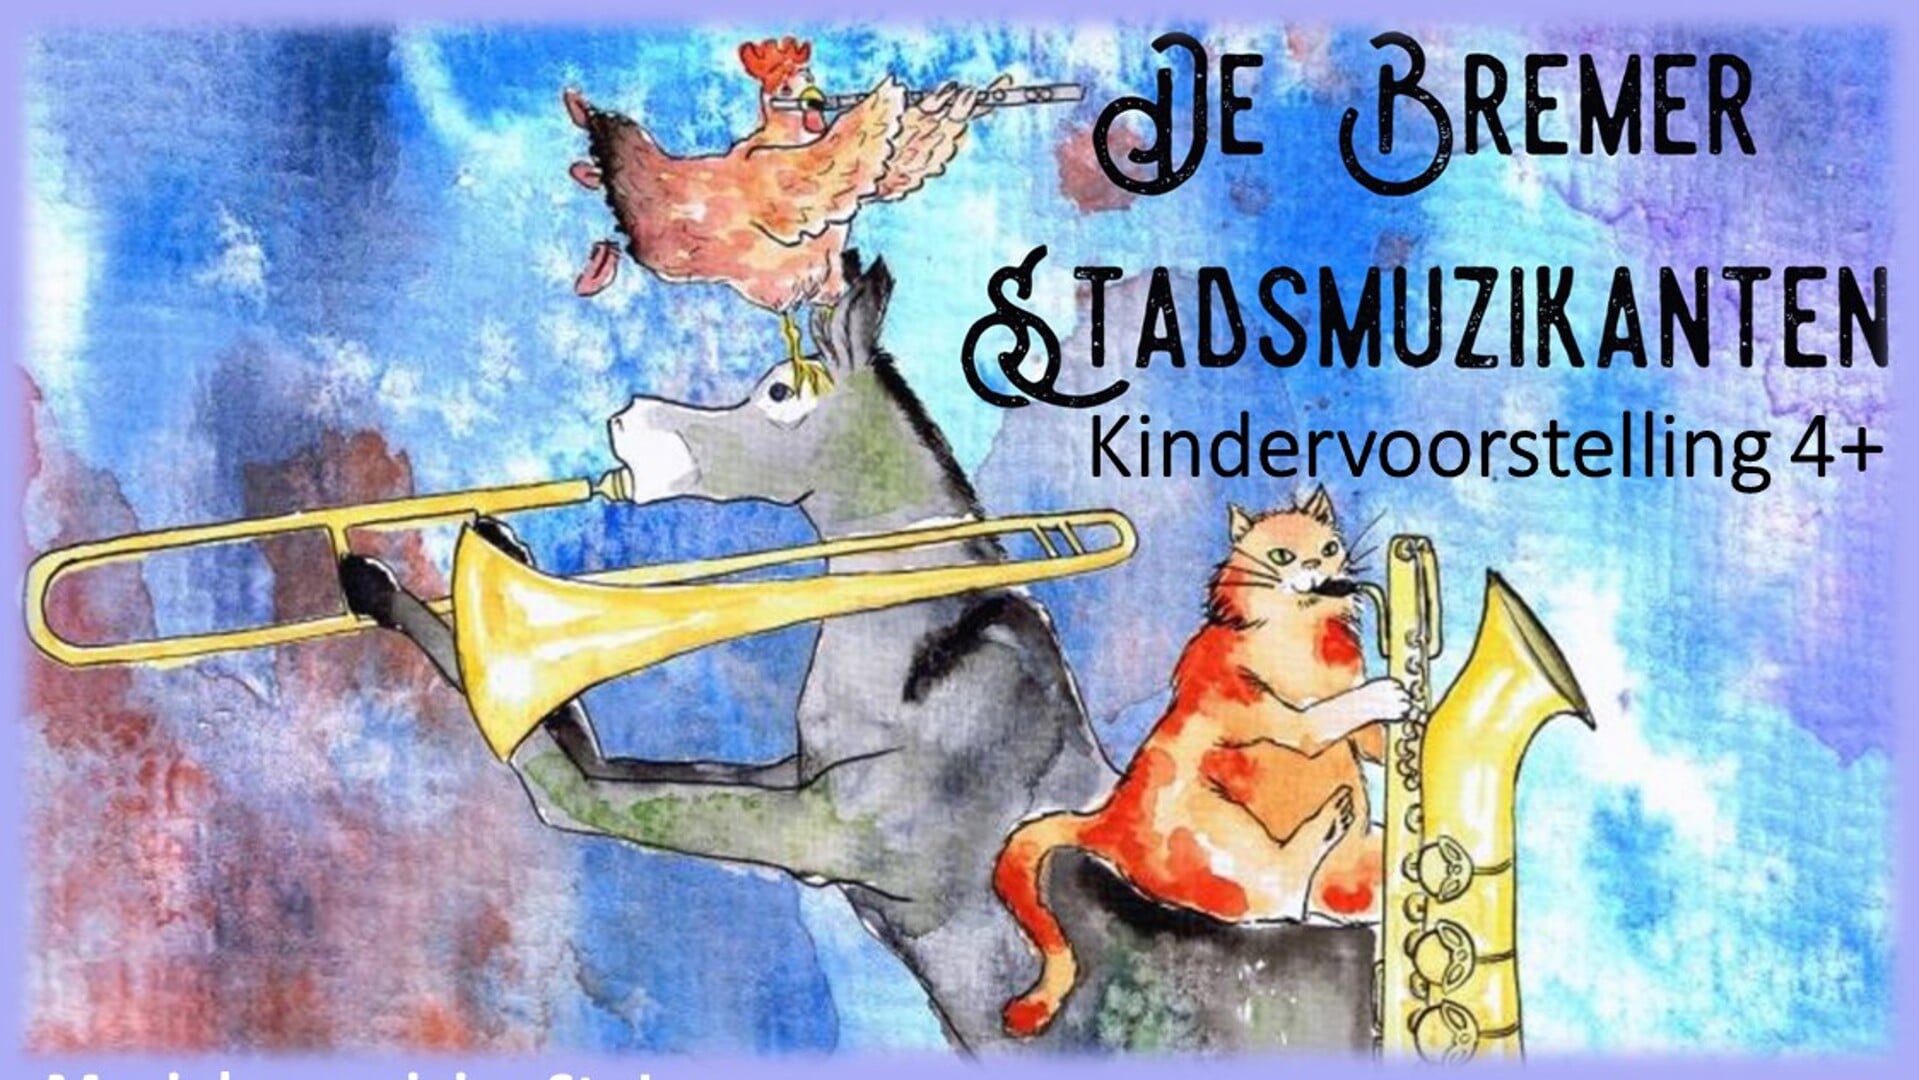 Orkest brengt kindersprookje De Bremer Stadsmuzikanten tot leven.